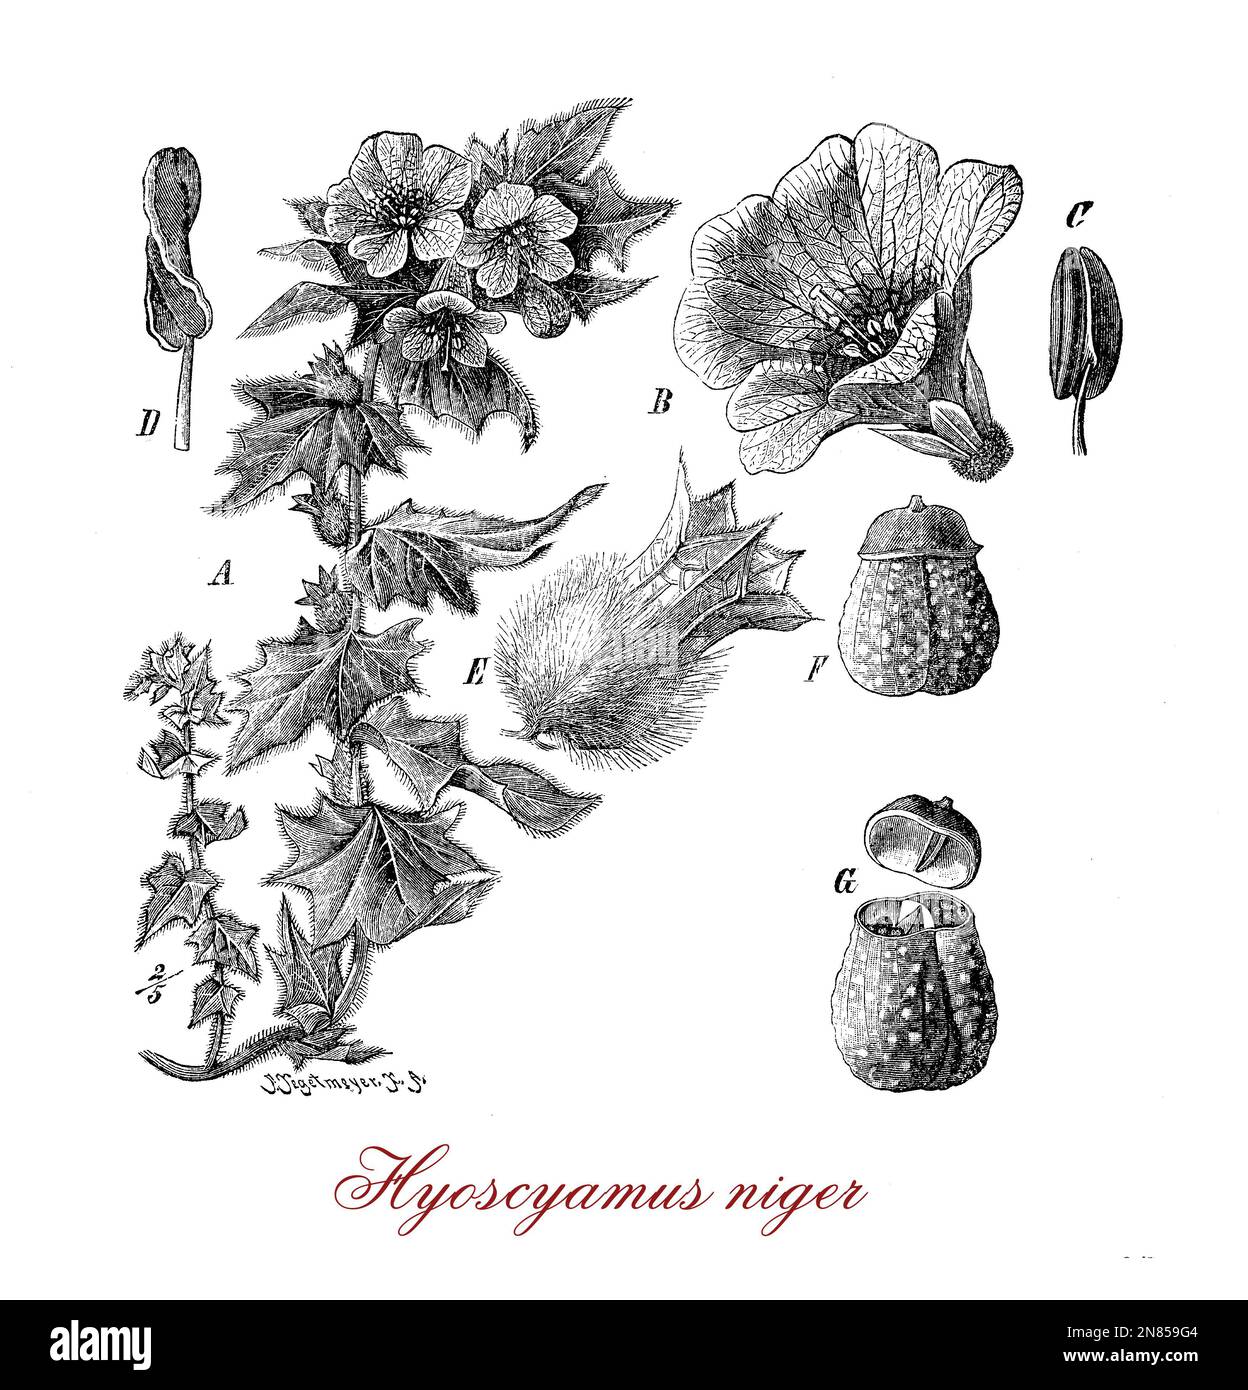 Vintage illustration d'Hyoscyamus niger jusquiame noire,ou plante toxique utilisé dans la médecine antique comme potion anesthésiques pour la bière et d'aromatisants, maintenant cultivé à des fins pharmaceutiques Banque D'Images